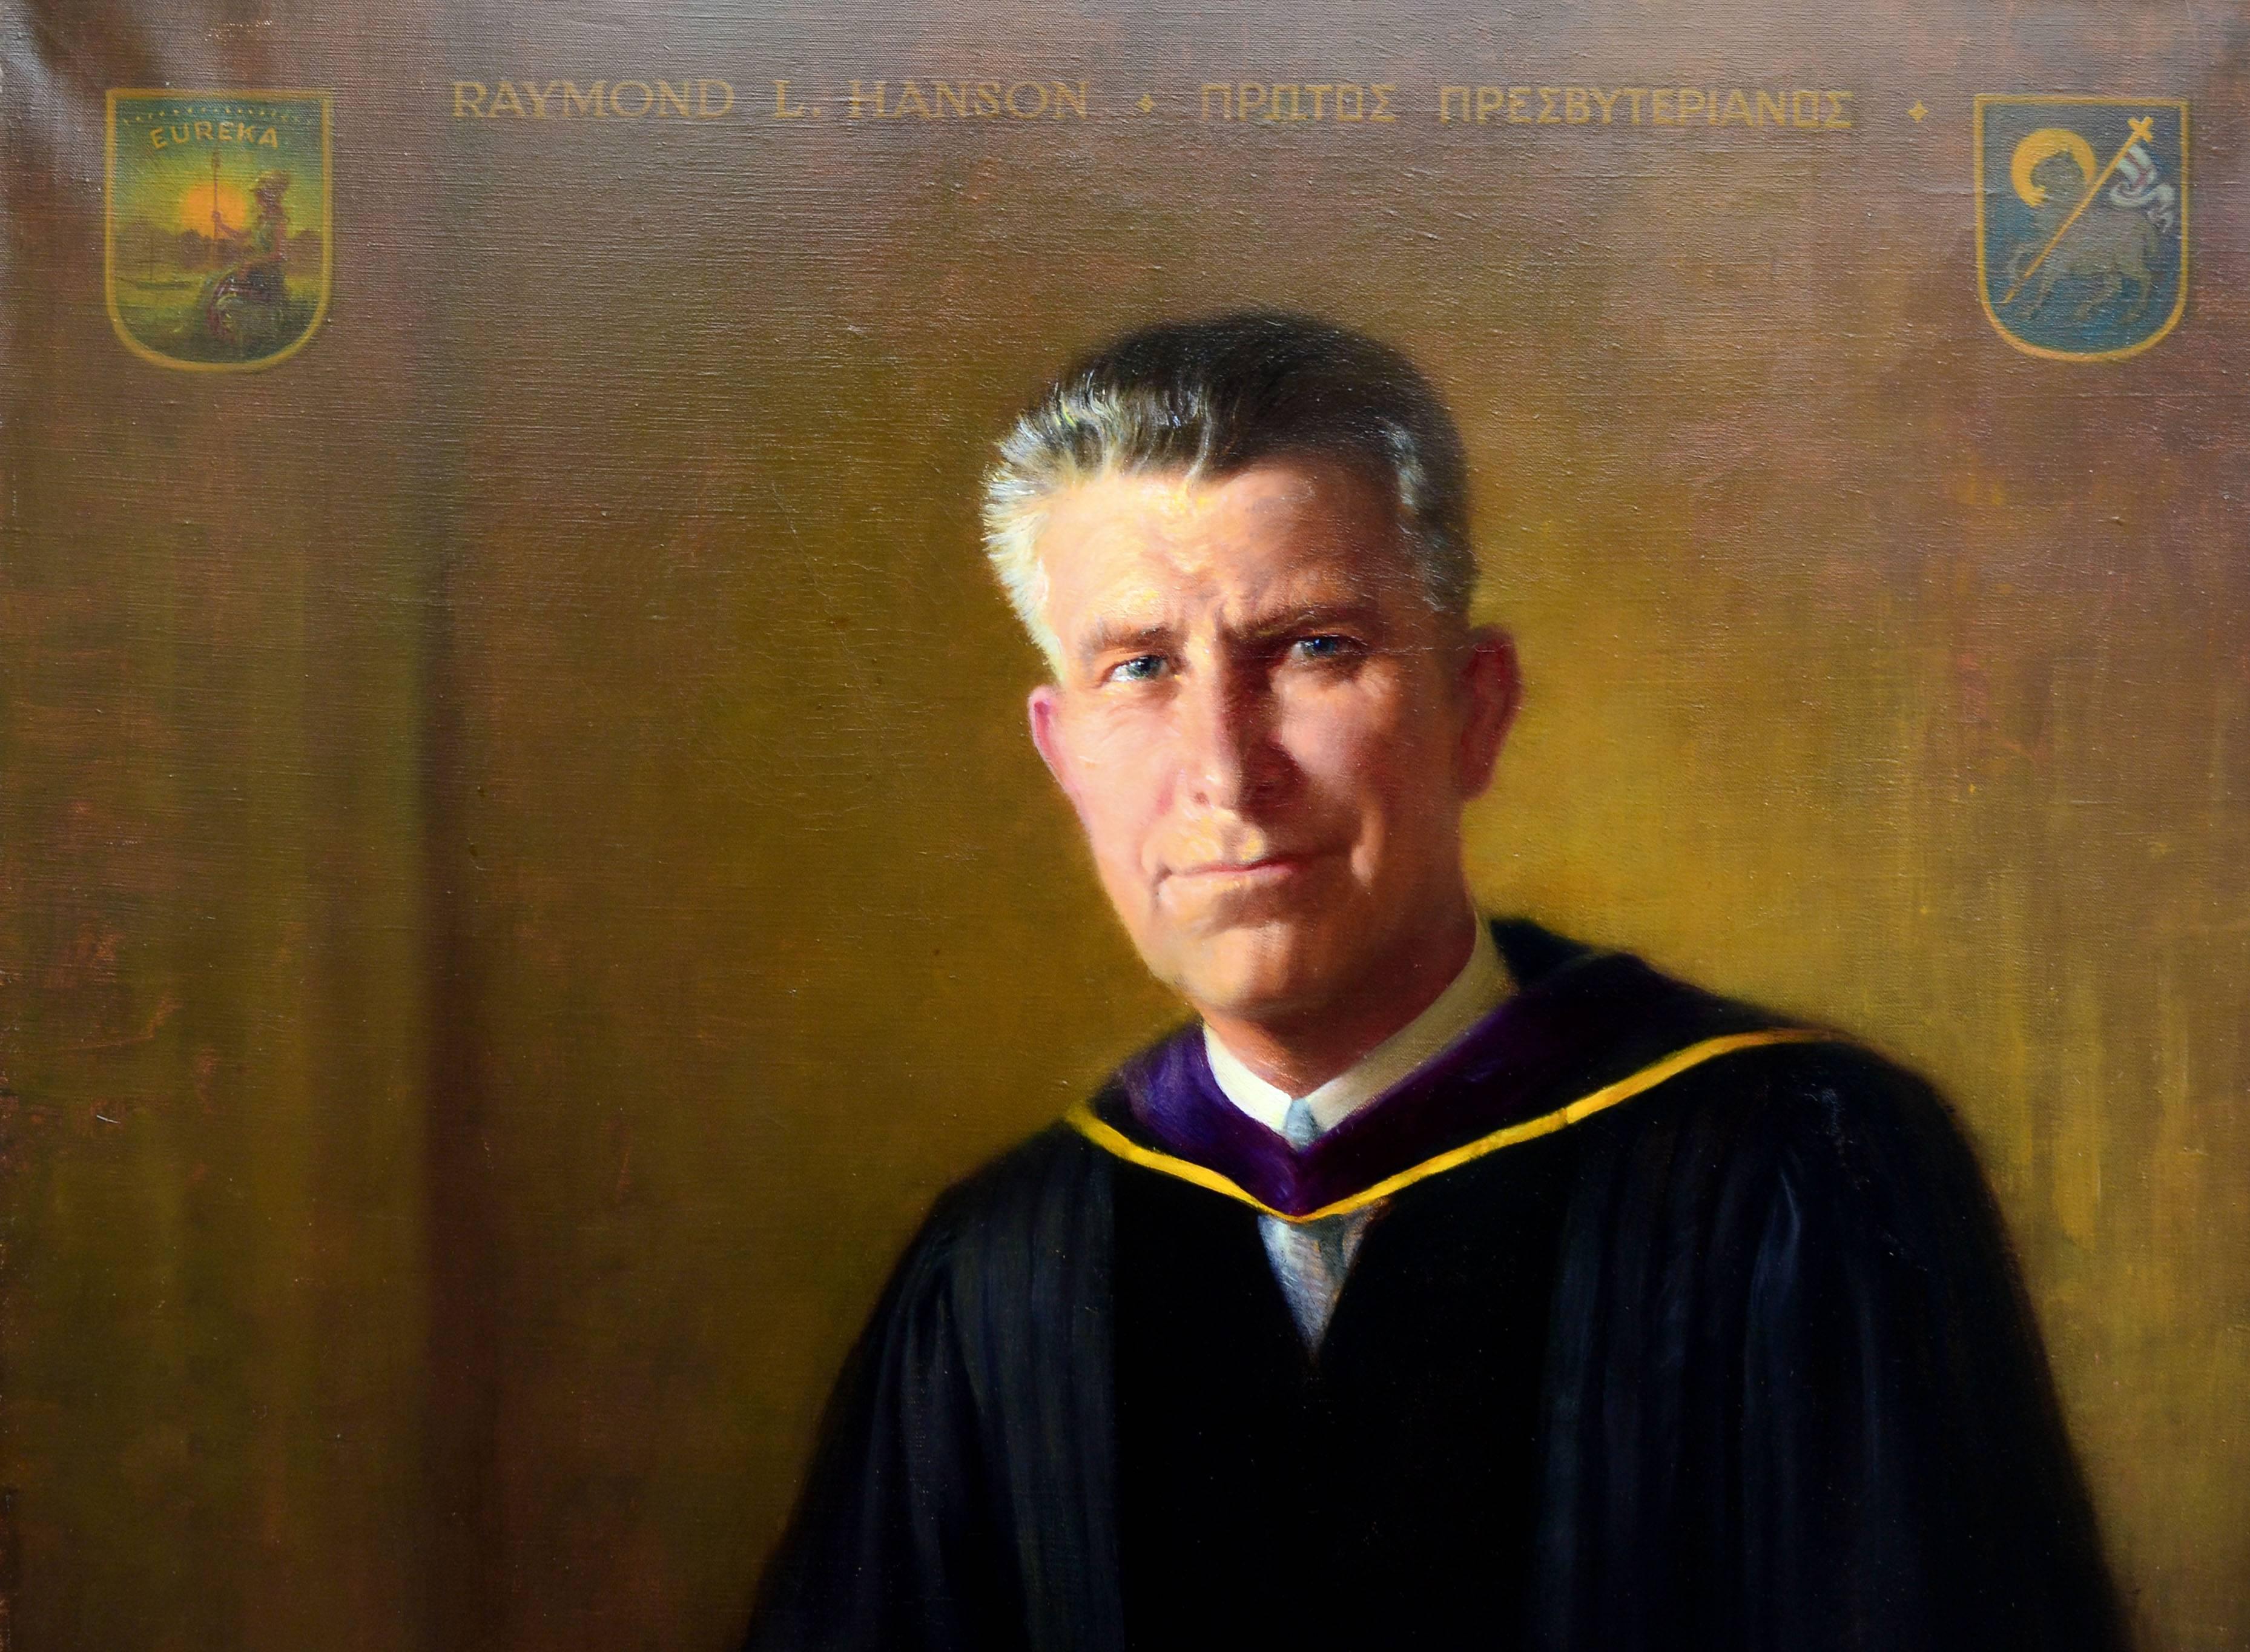 Portrait du milieu du siècle dernier de Raymond L. Hanson, portrait figuratif photoréaliste à grande échelle - Painting de W.S. Bylityplis